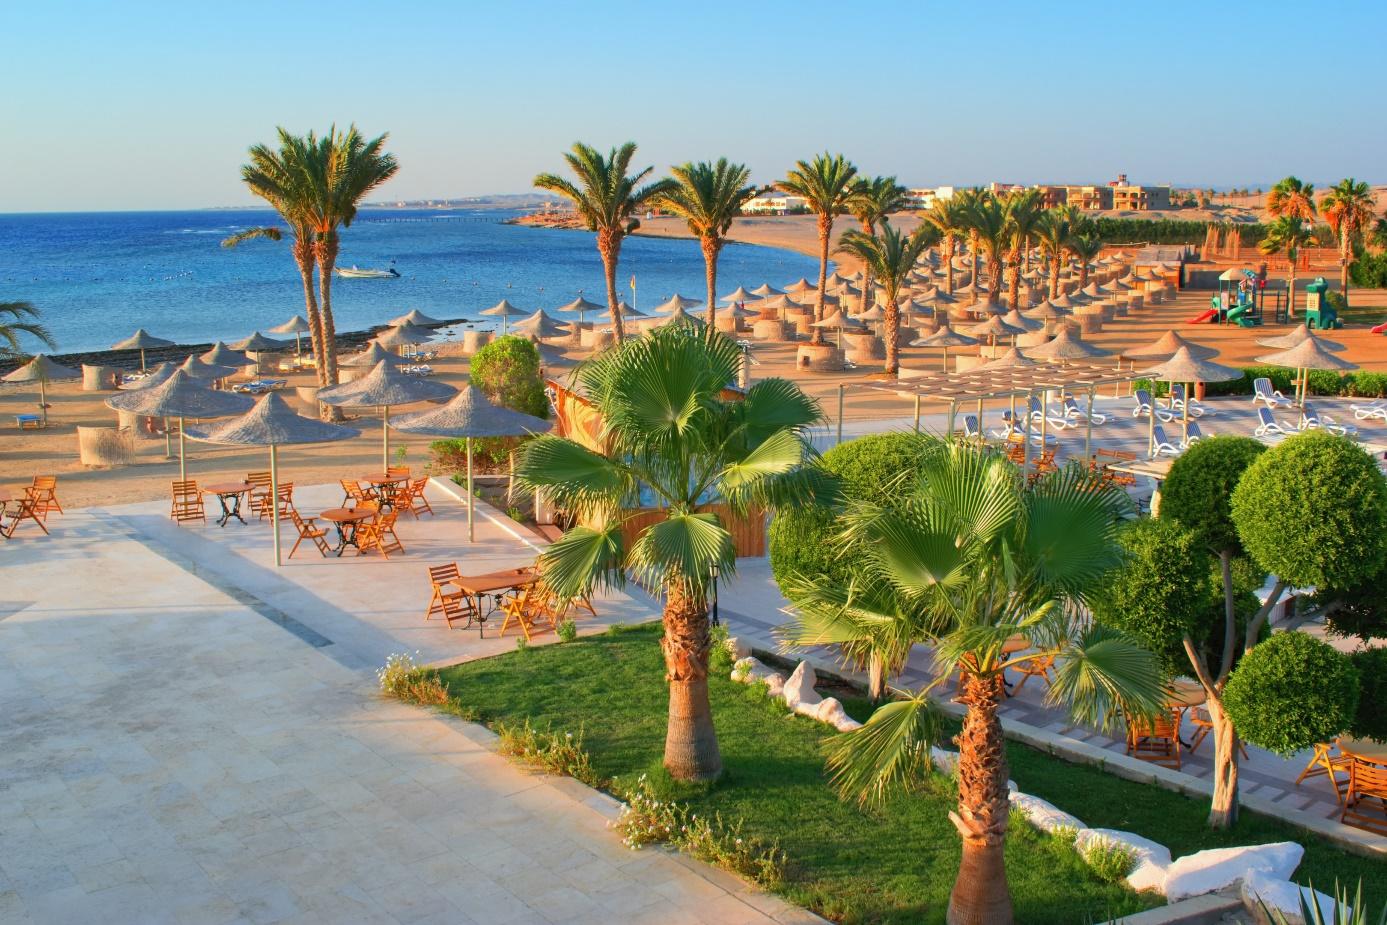 Egipt Hurghada, wycieczka do Egiptu, piękny widok na plażę i palmy